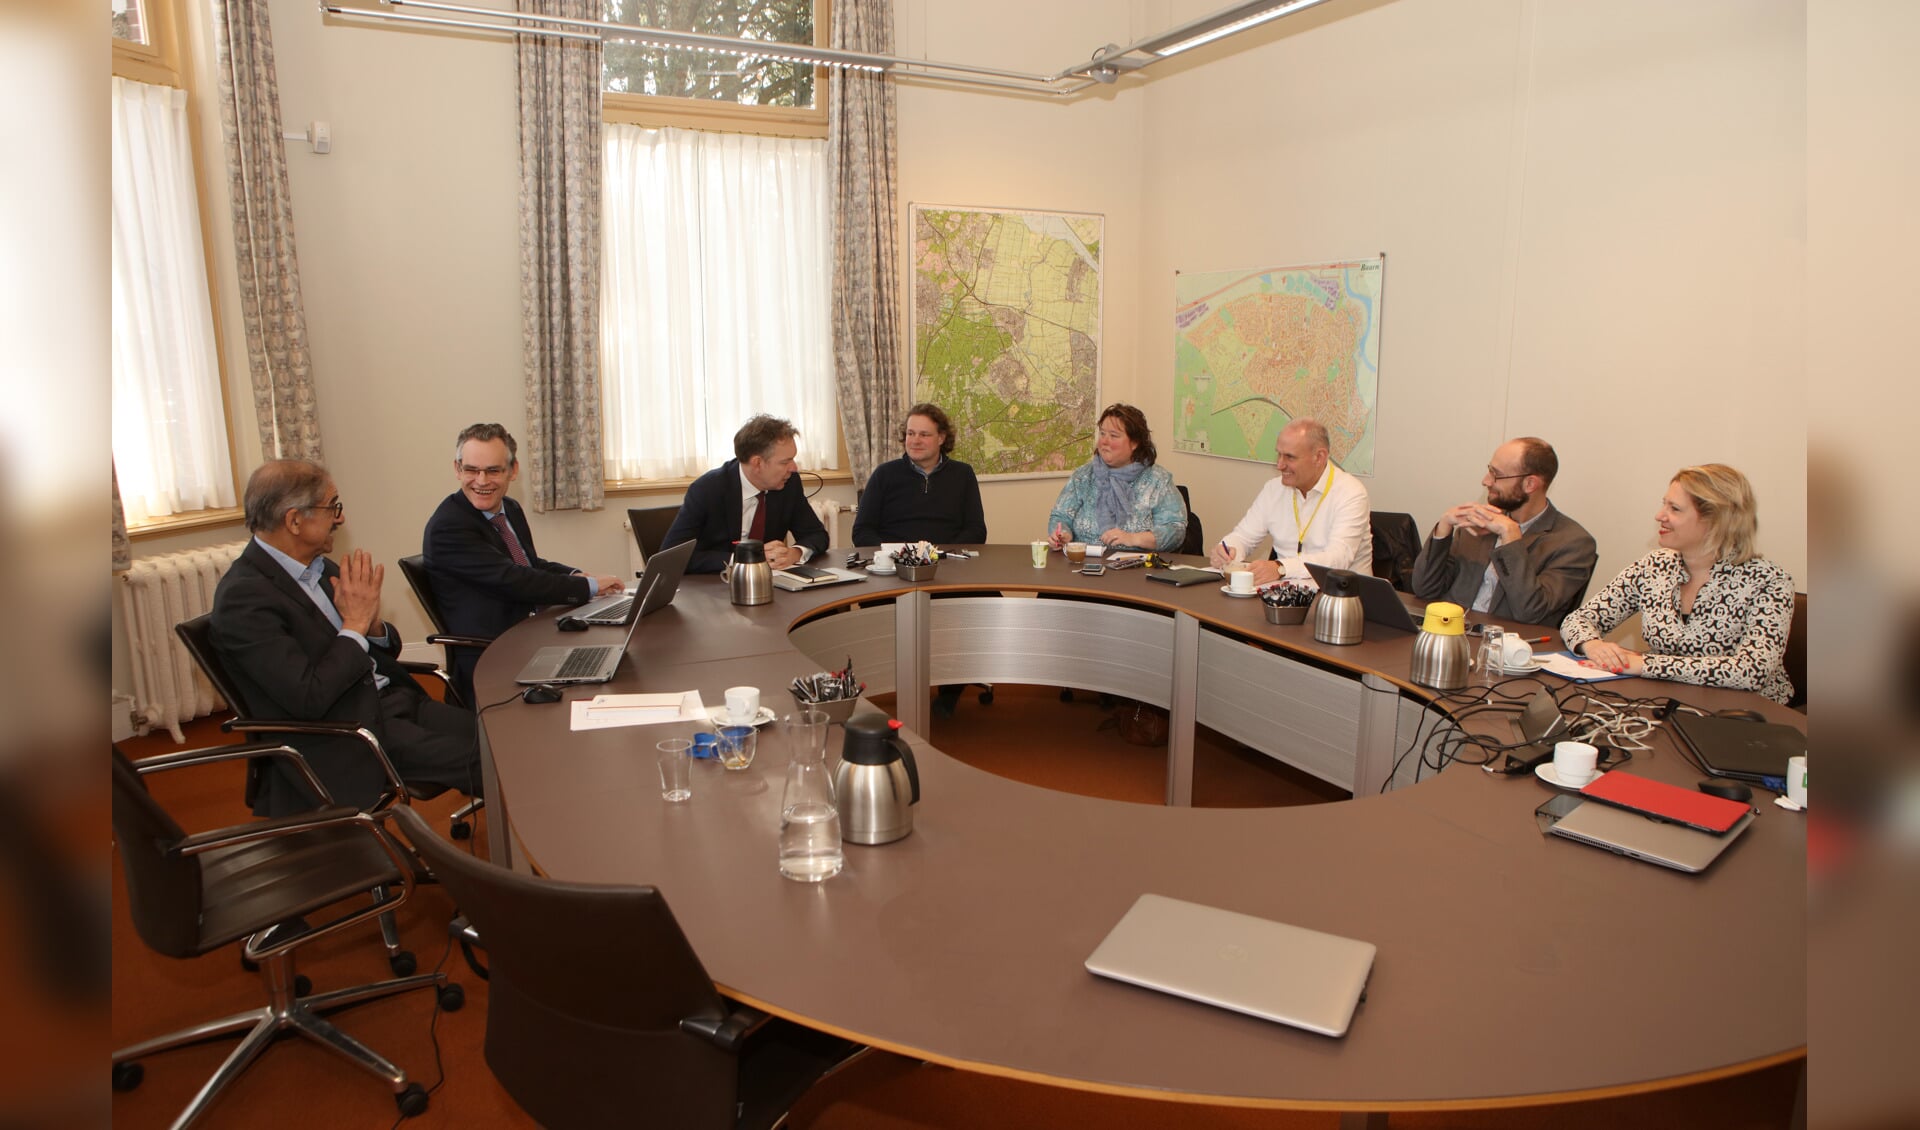 Het vorige/huidige Baarnse college in gesprek met de redactie van de Baarnsche Courant.